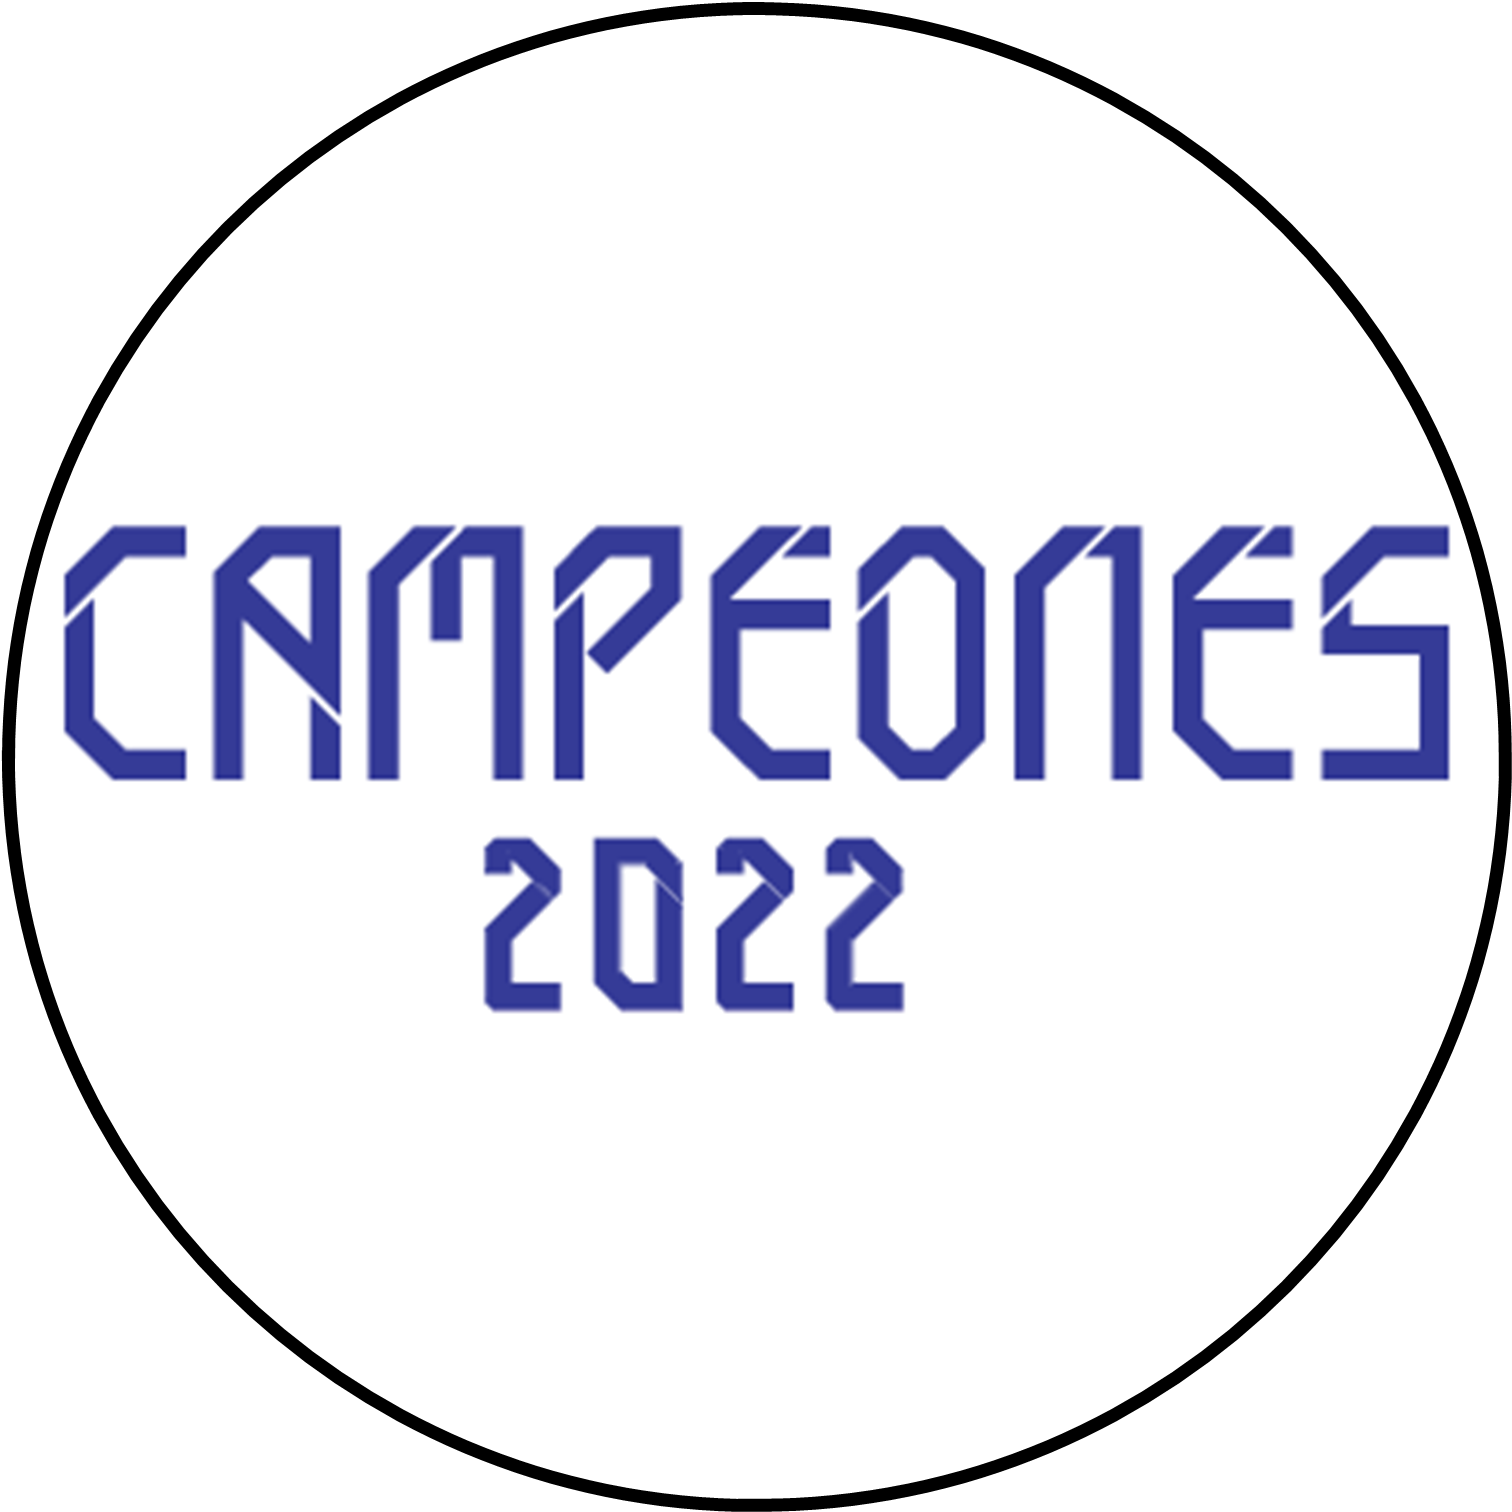 CAMPEONES22.PNG